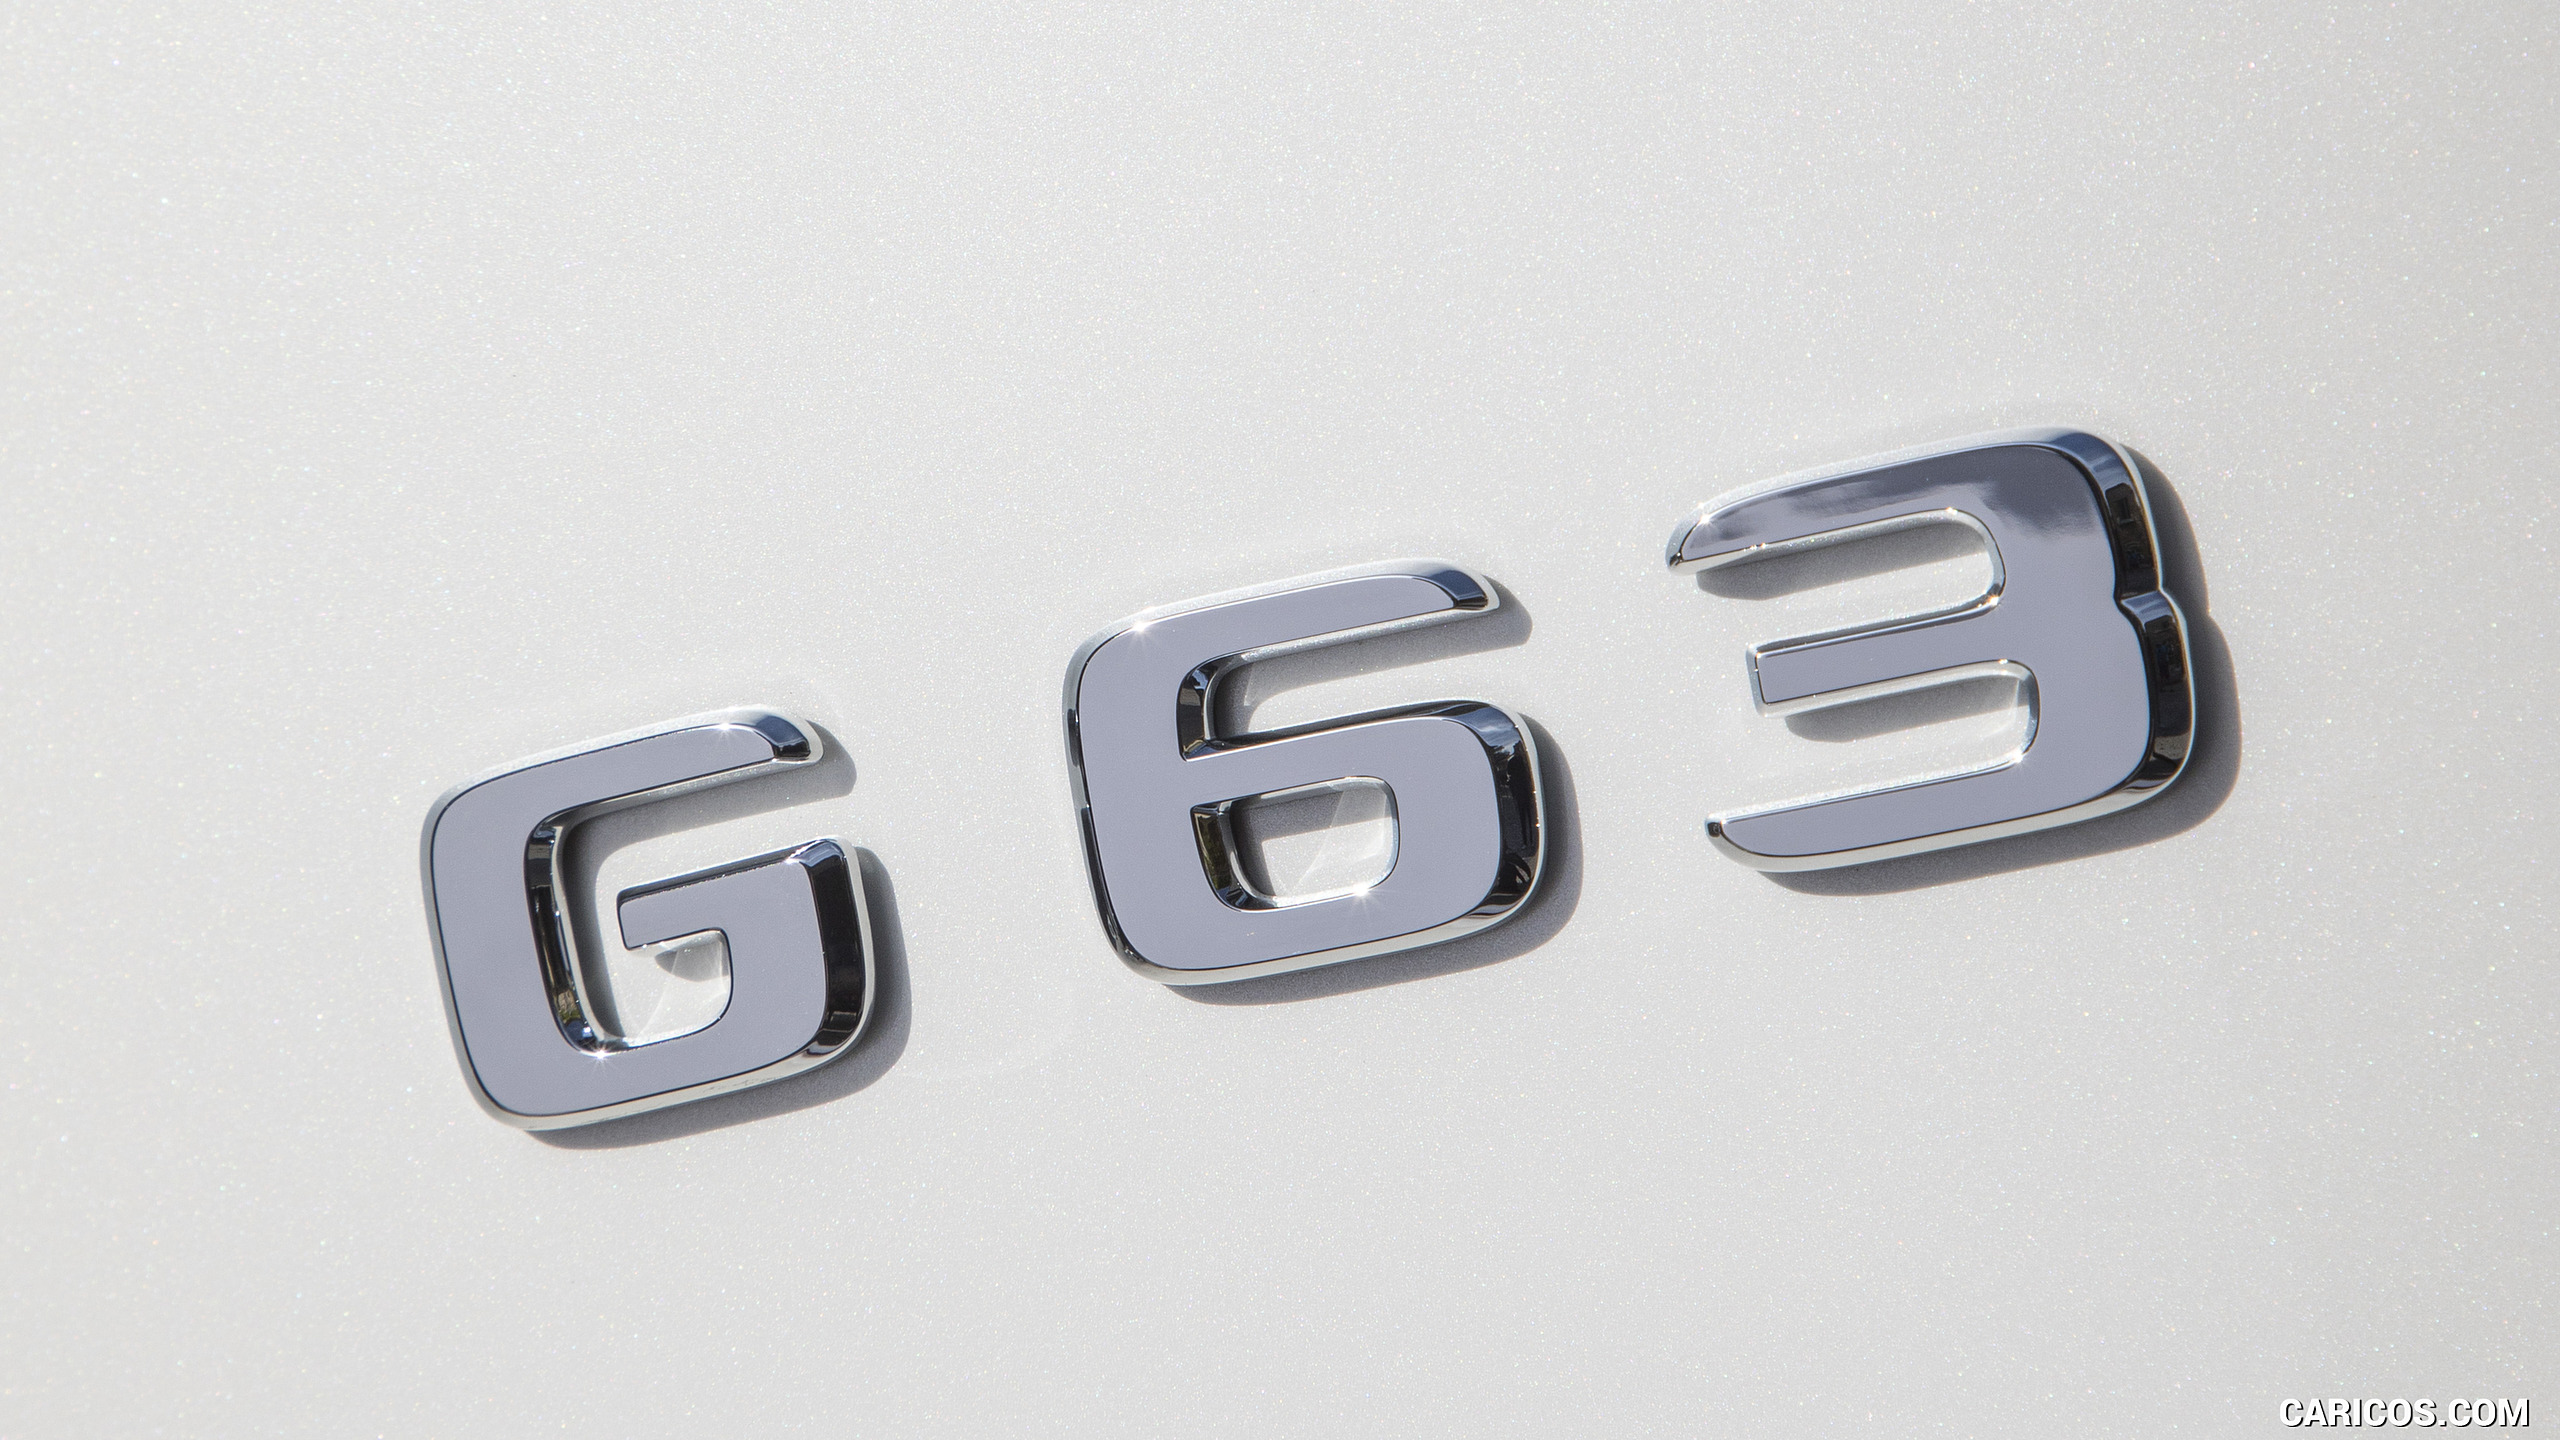 2019 Mercedes-AMG G63 (Color: Designo Diamond White Bright) - Badge, #115 of 452